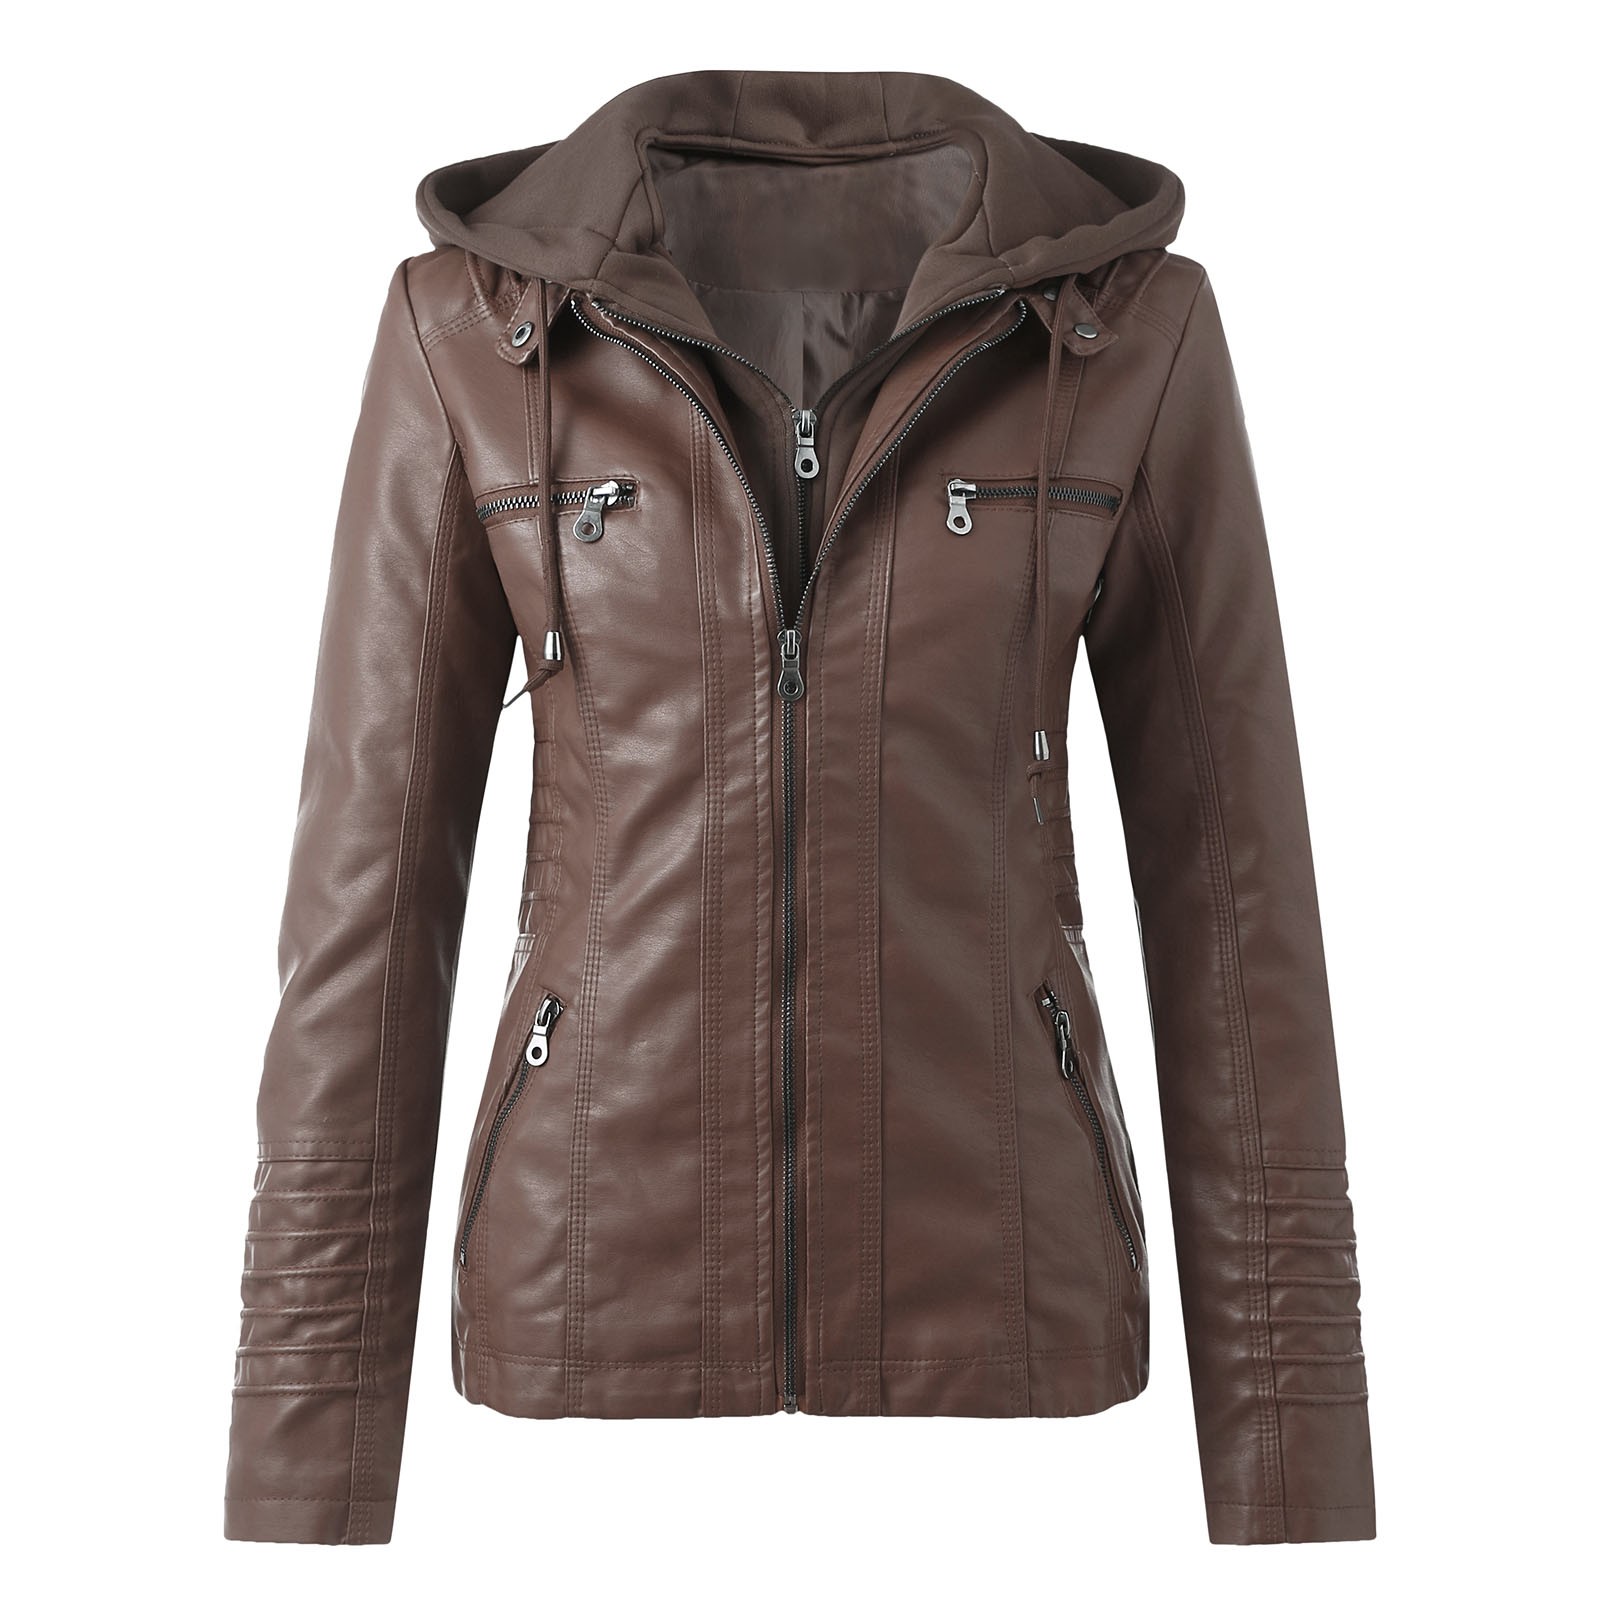 Bescita Women's Slim Leather Stand Collar Zip Motorcycle Suit Belt Coat Jacket Tops - image 1 of 5